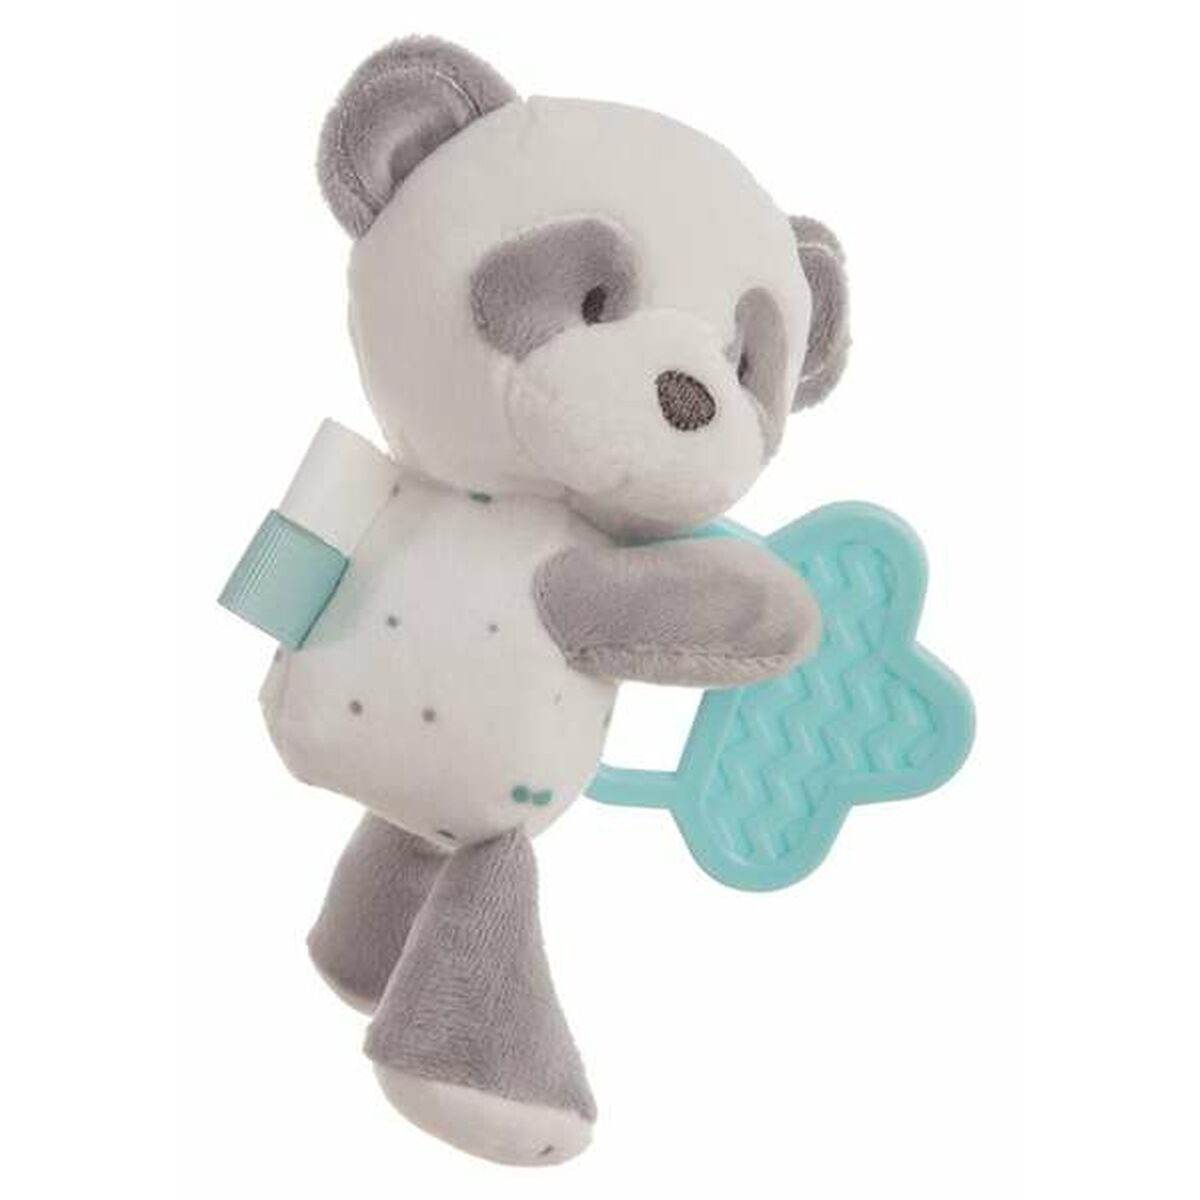 Fluffy toy 20 cm Teether Panda bear